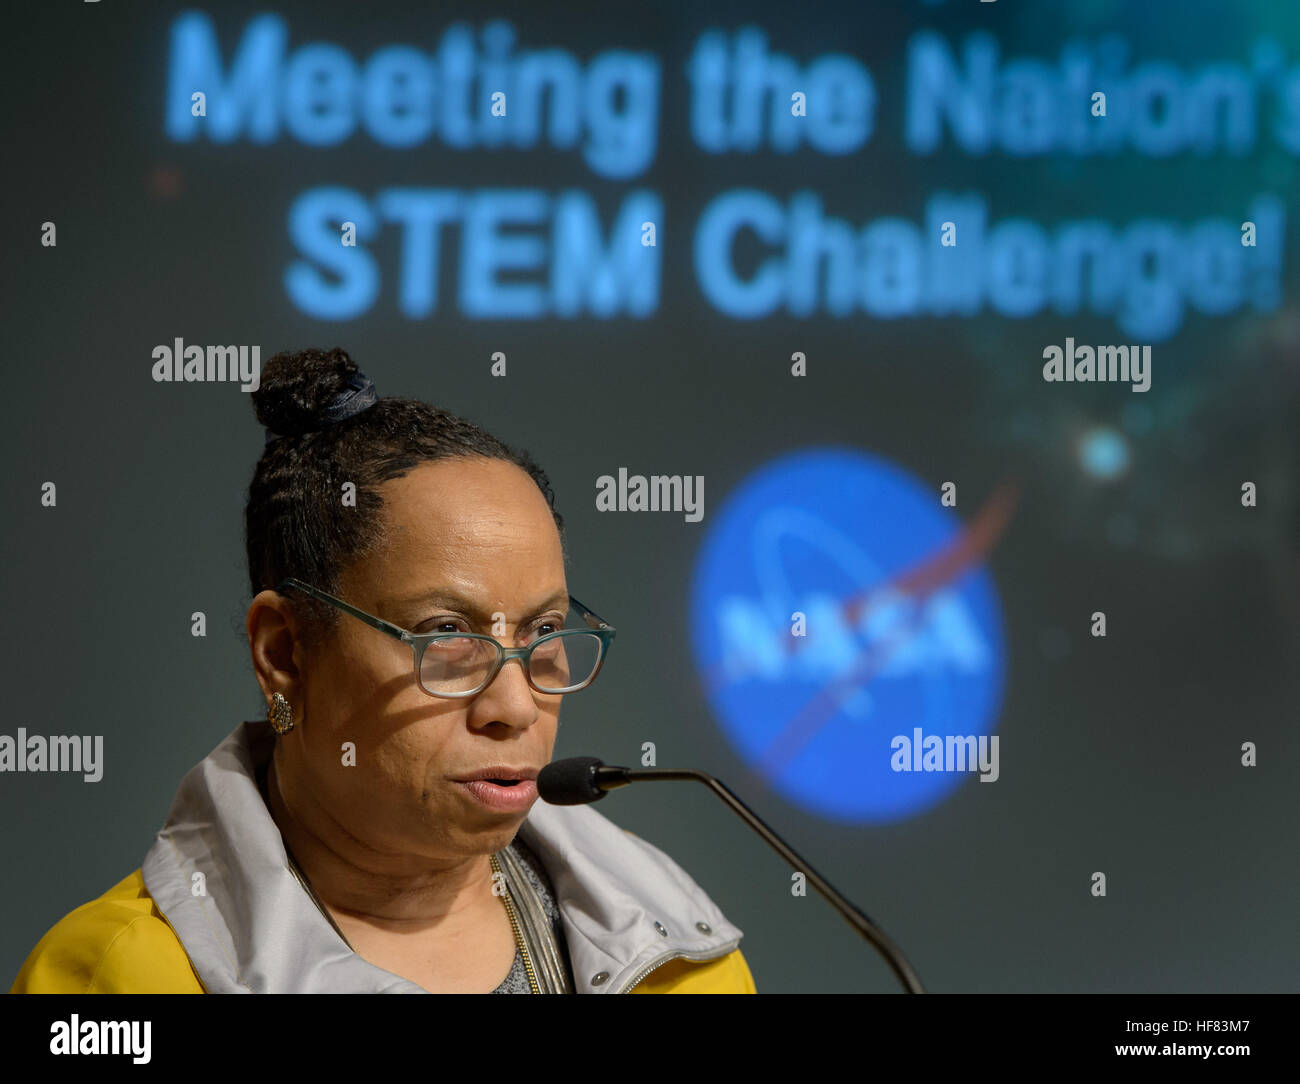 Brenda R. Manuel, Associate Administrator, NASA Office of Diversity und Chancengleichheit (ODEO), Gespräche während der MissionSTEM Summit 2016, Montag, 8. August 2016 im NASA-Hauptquartier in Washington. Stockfoto